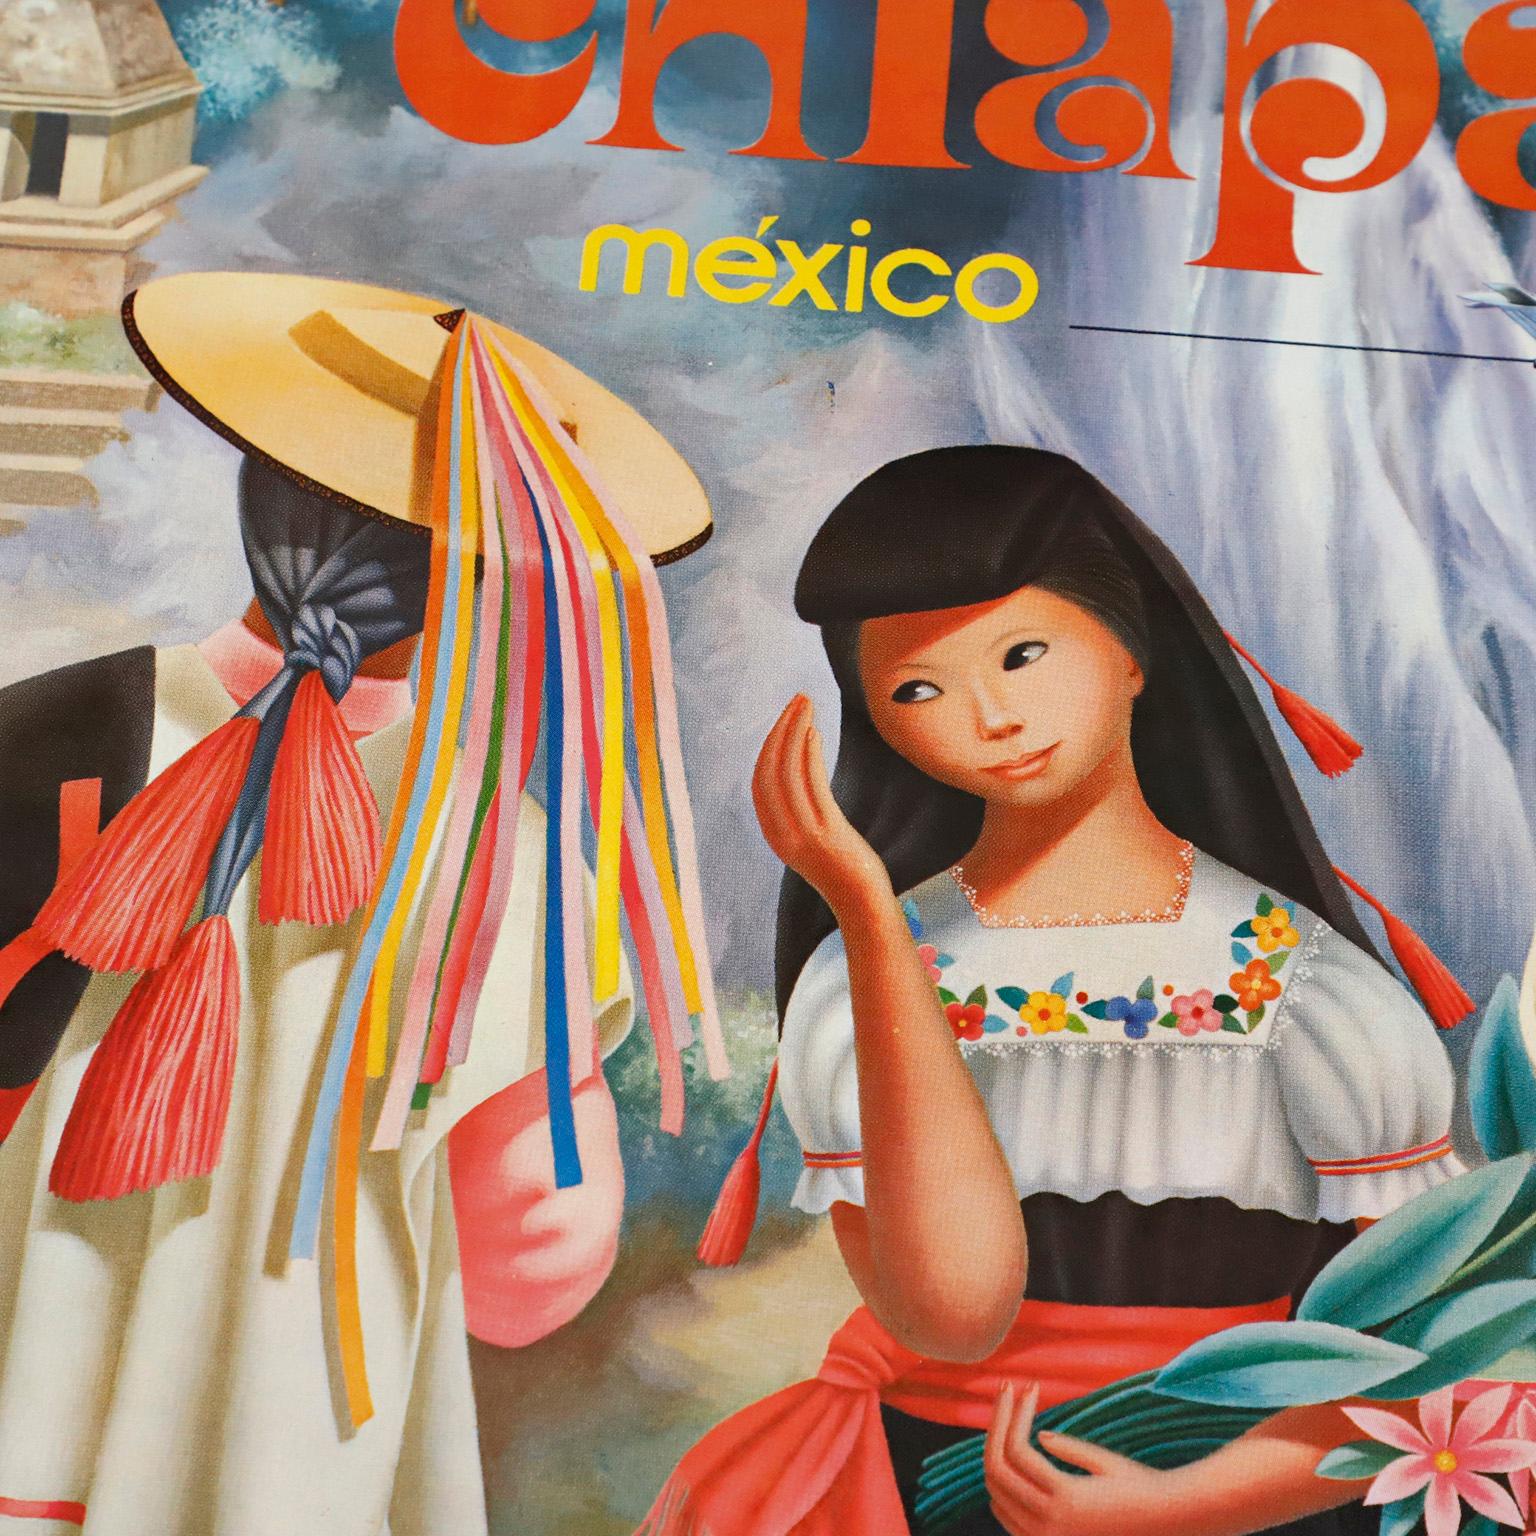 Circa 1970. Wir bieten dieses Original Chiapas, Mexicana Airlines Poster von Regina Raull.

Regina Raull war eine spanische Malerin mit Wohnsitz in Mexiko-Stadt. Die aus Bilbao stammende Raull wanderte 1939 mit ihrer Familie aus Spanien aus und